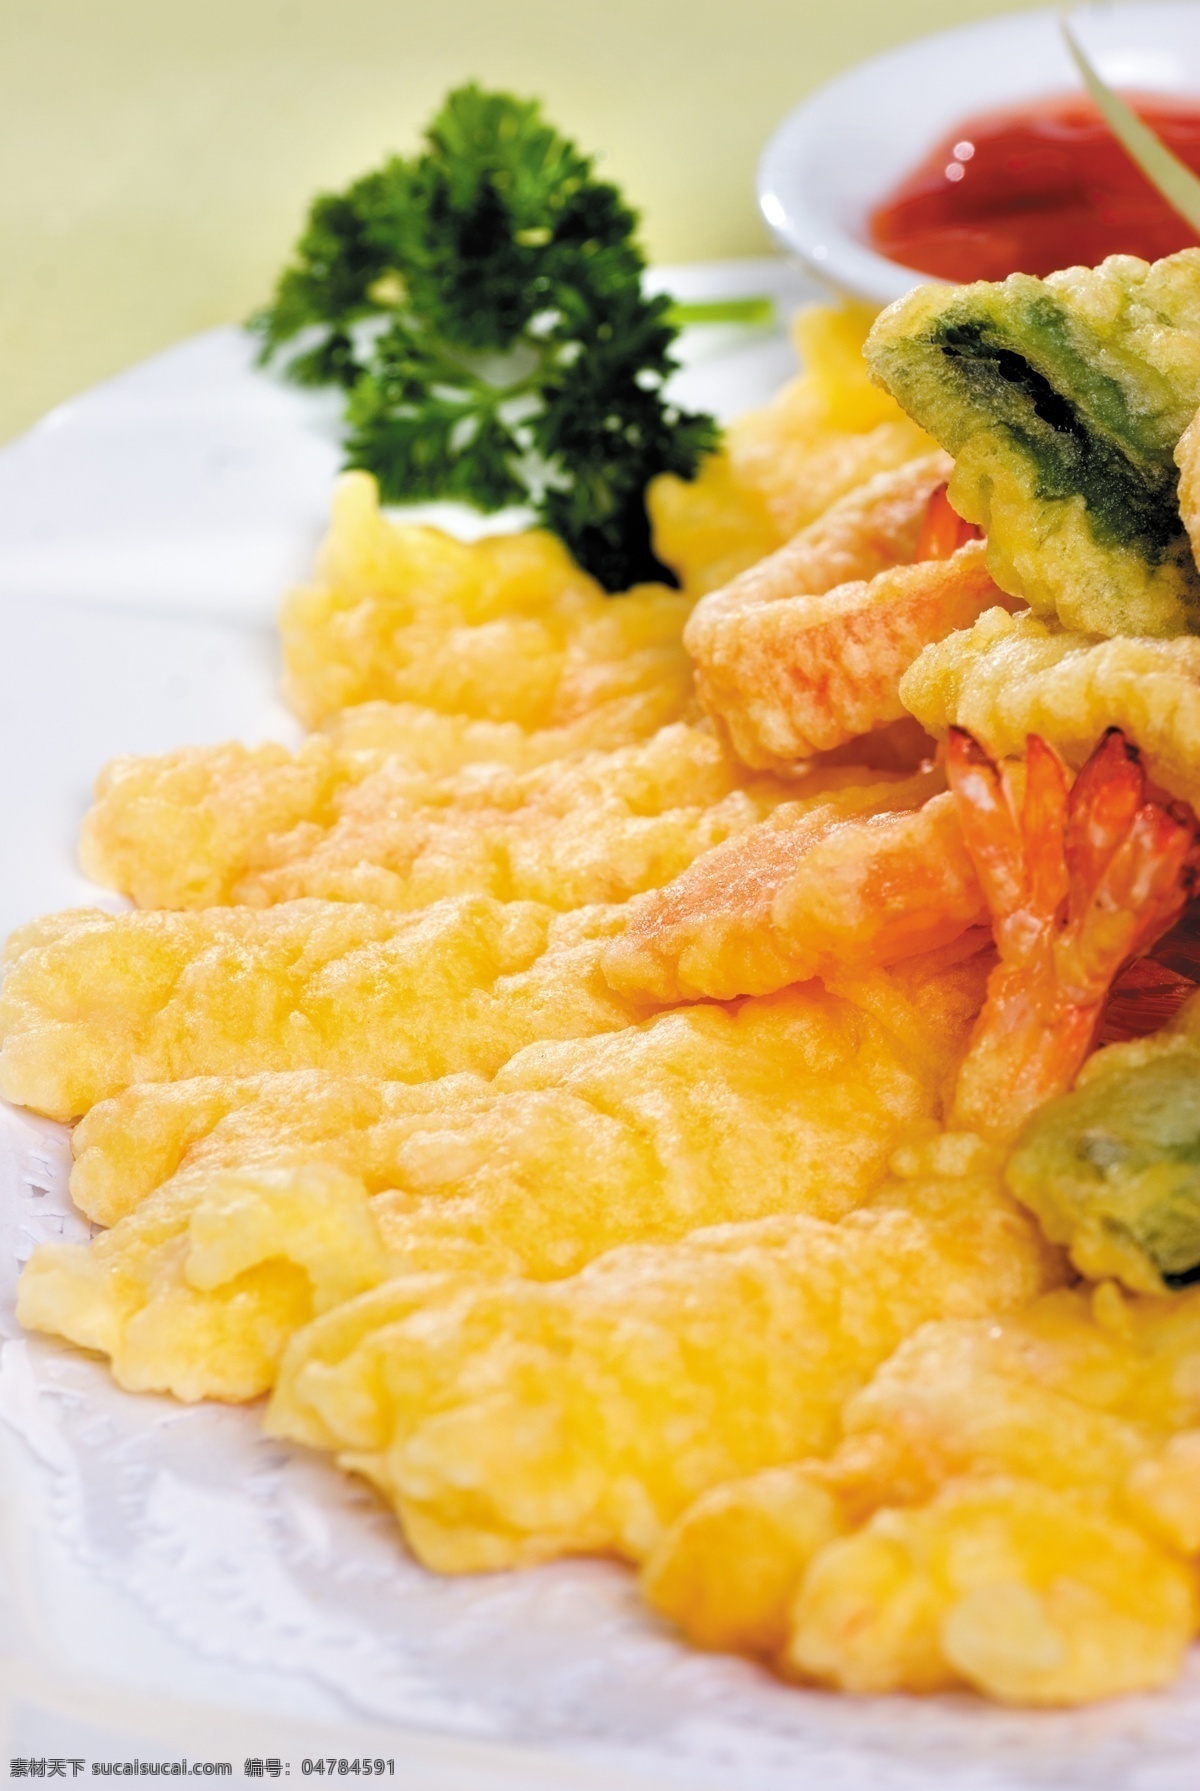 天妇罗虾 天妇罗 虾 日本料理 炸虾 小吃 餐饮美食 传统美食